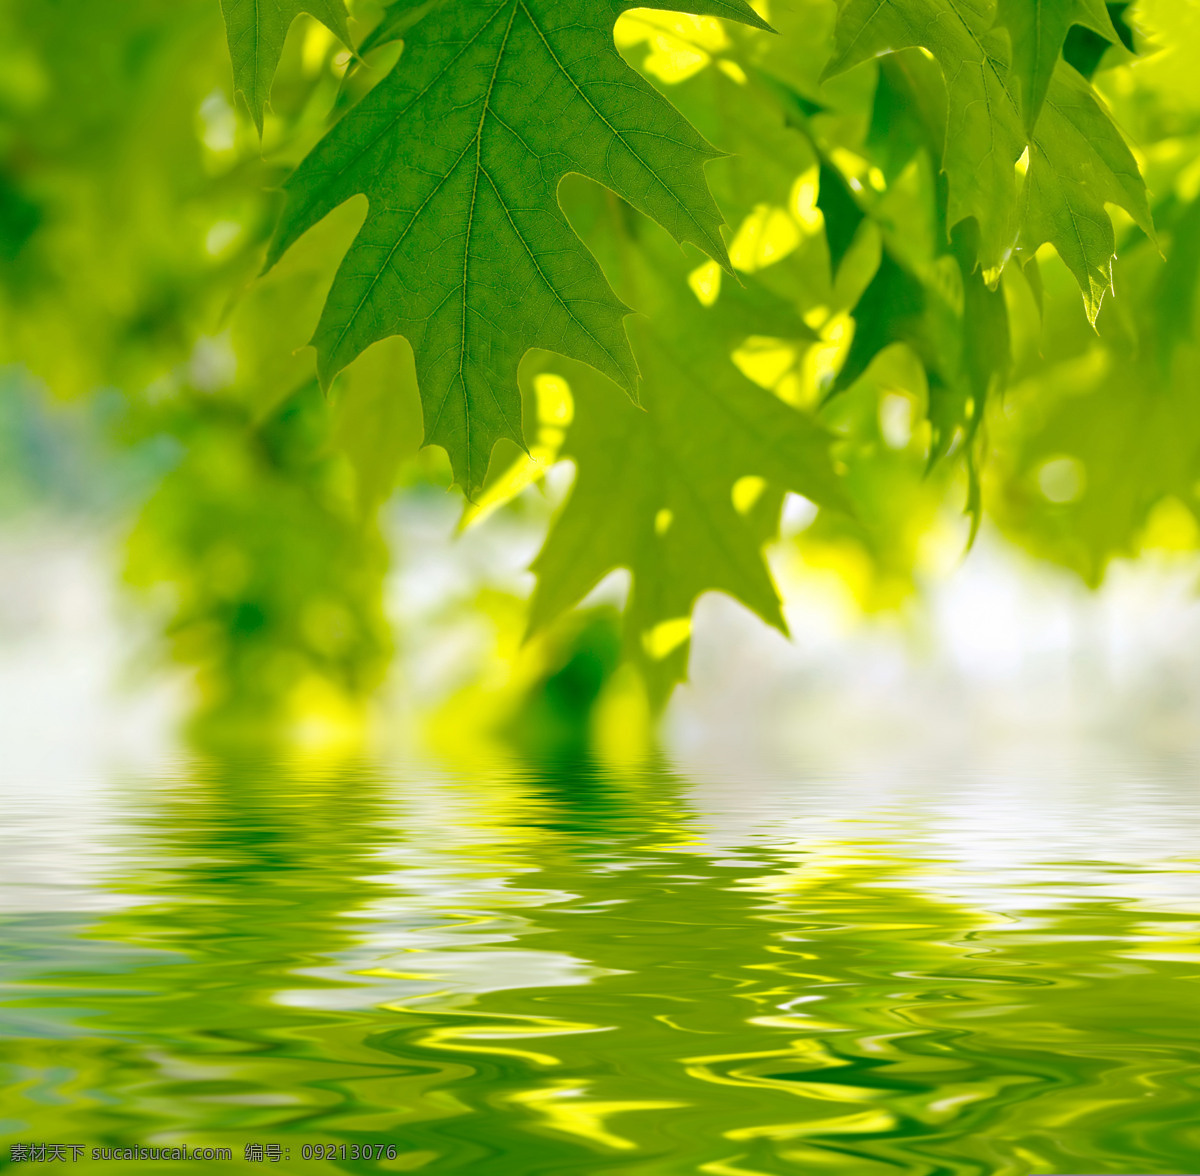 漂亮 水景 倒影 系列 高清 波纹 高清图片 绿色 绿叶 树叶 阳光 涟沥 水 y大宝